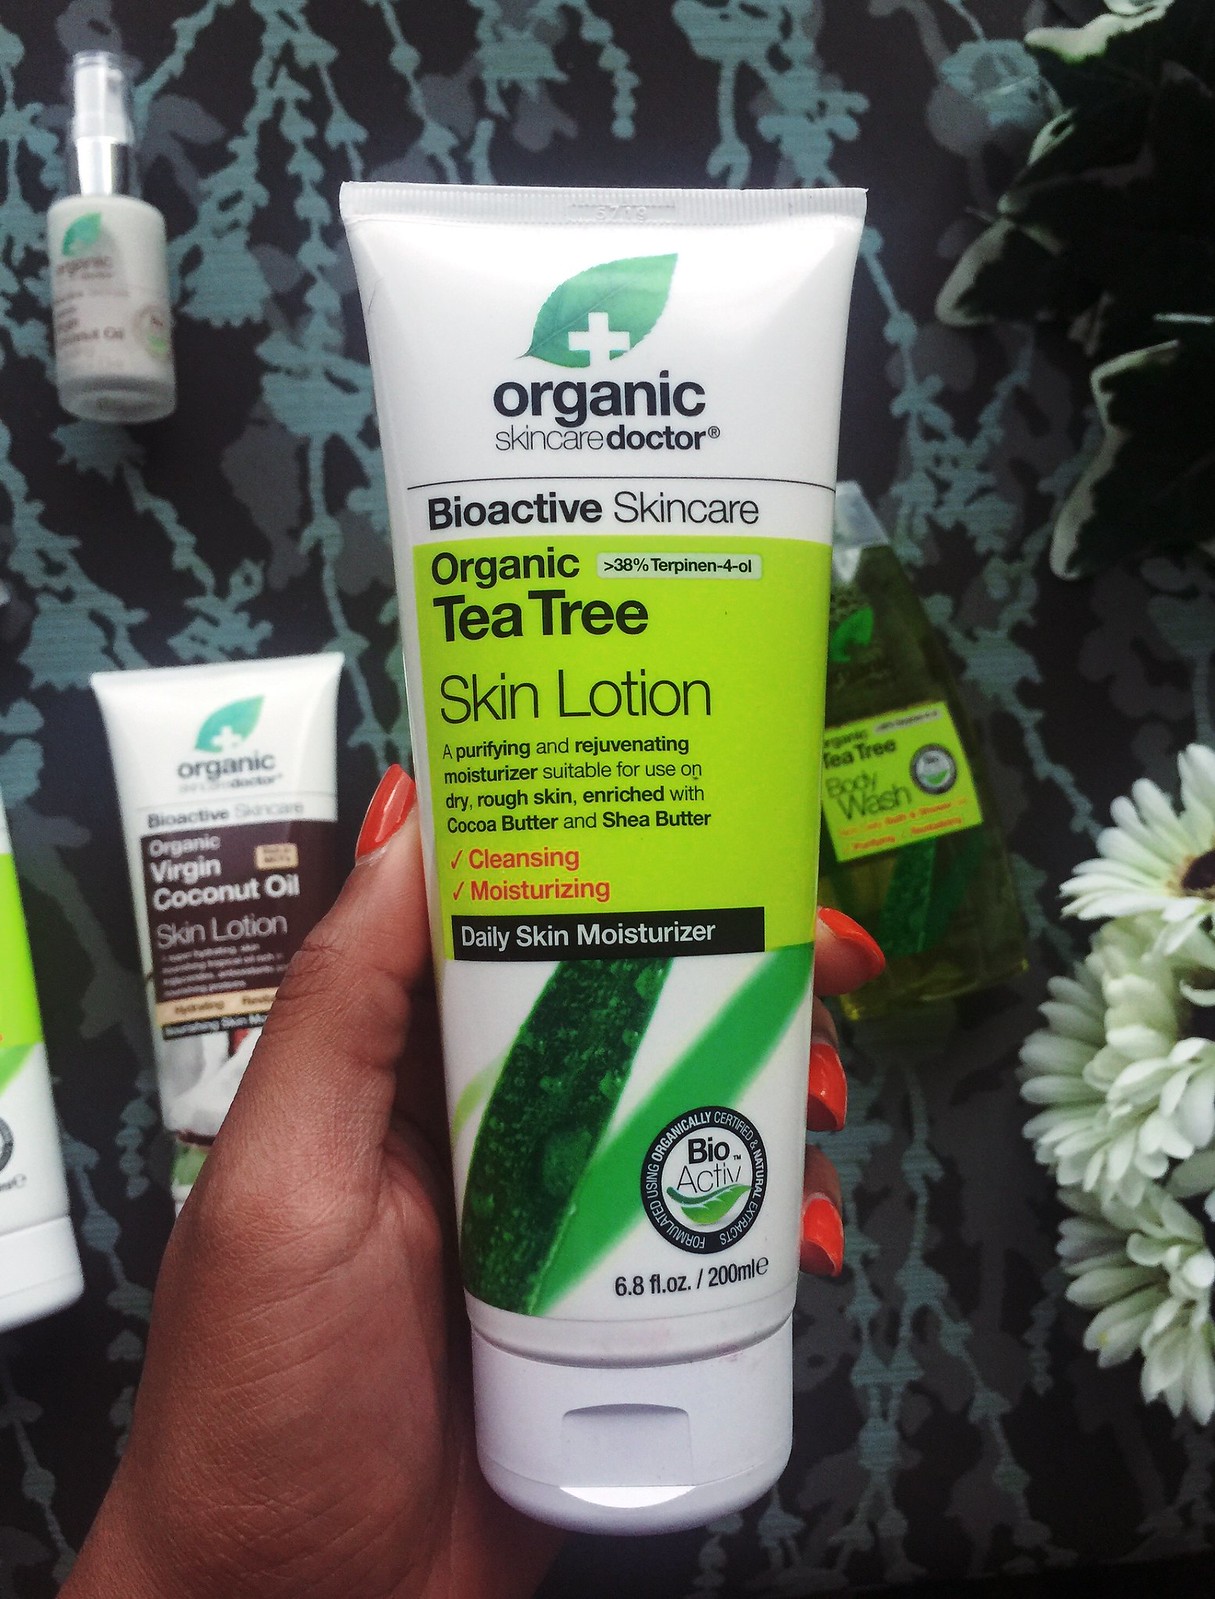 Organic Doctor Tea Tree Skin Lotion, candace hampton